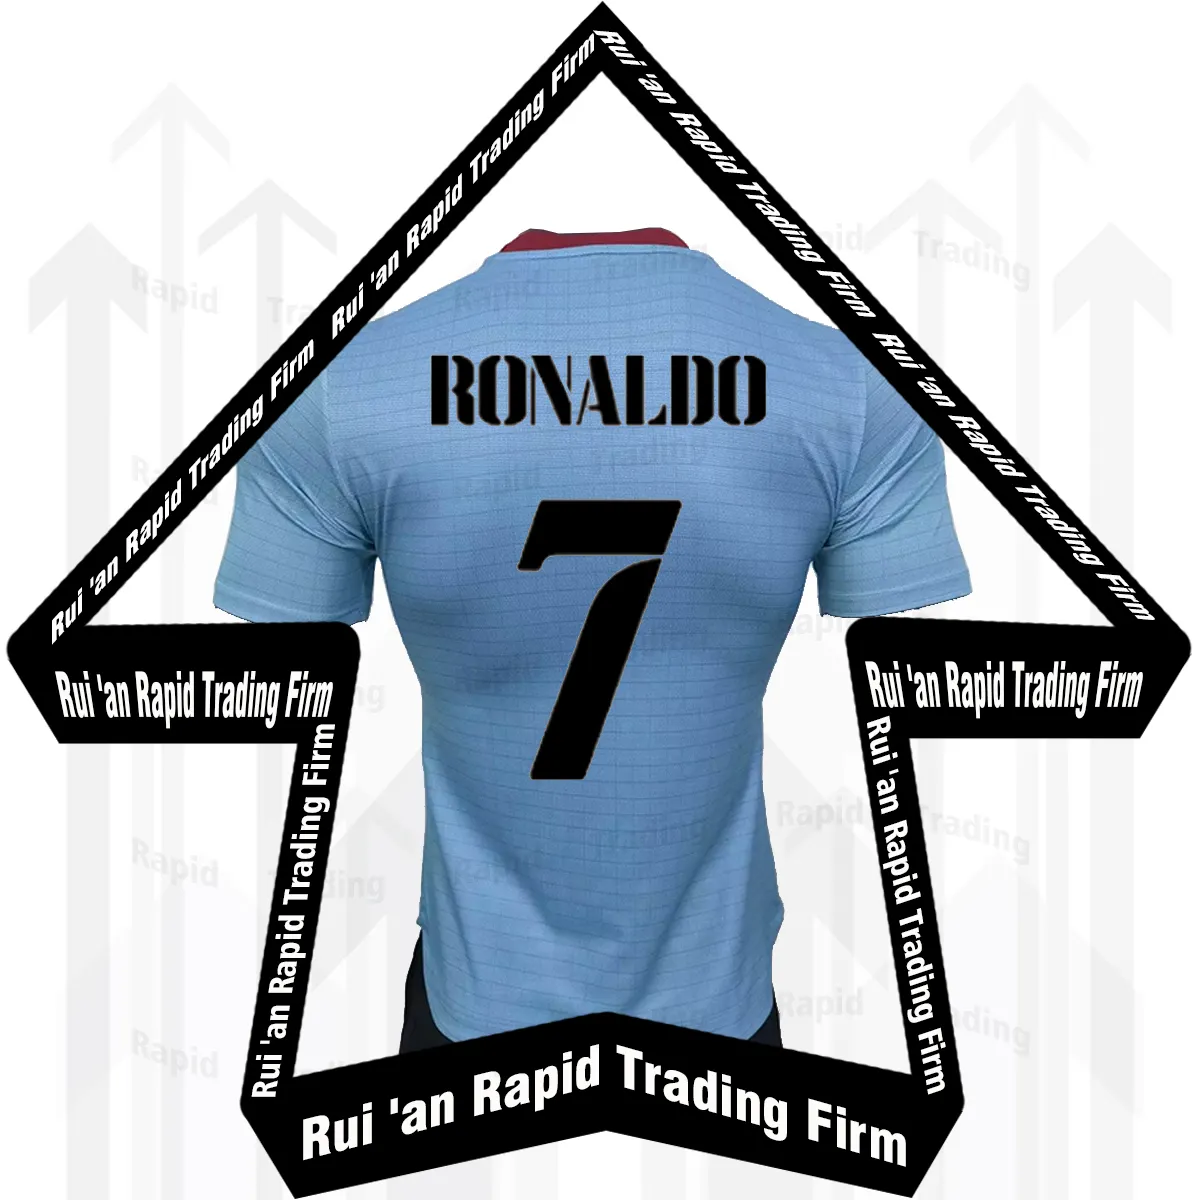 Camiseta retro del real madrid, camisa de fans de ronaldo, Benzema 9 vini jr, reales, venta al por mayor en línea, 2016